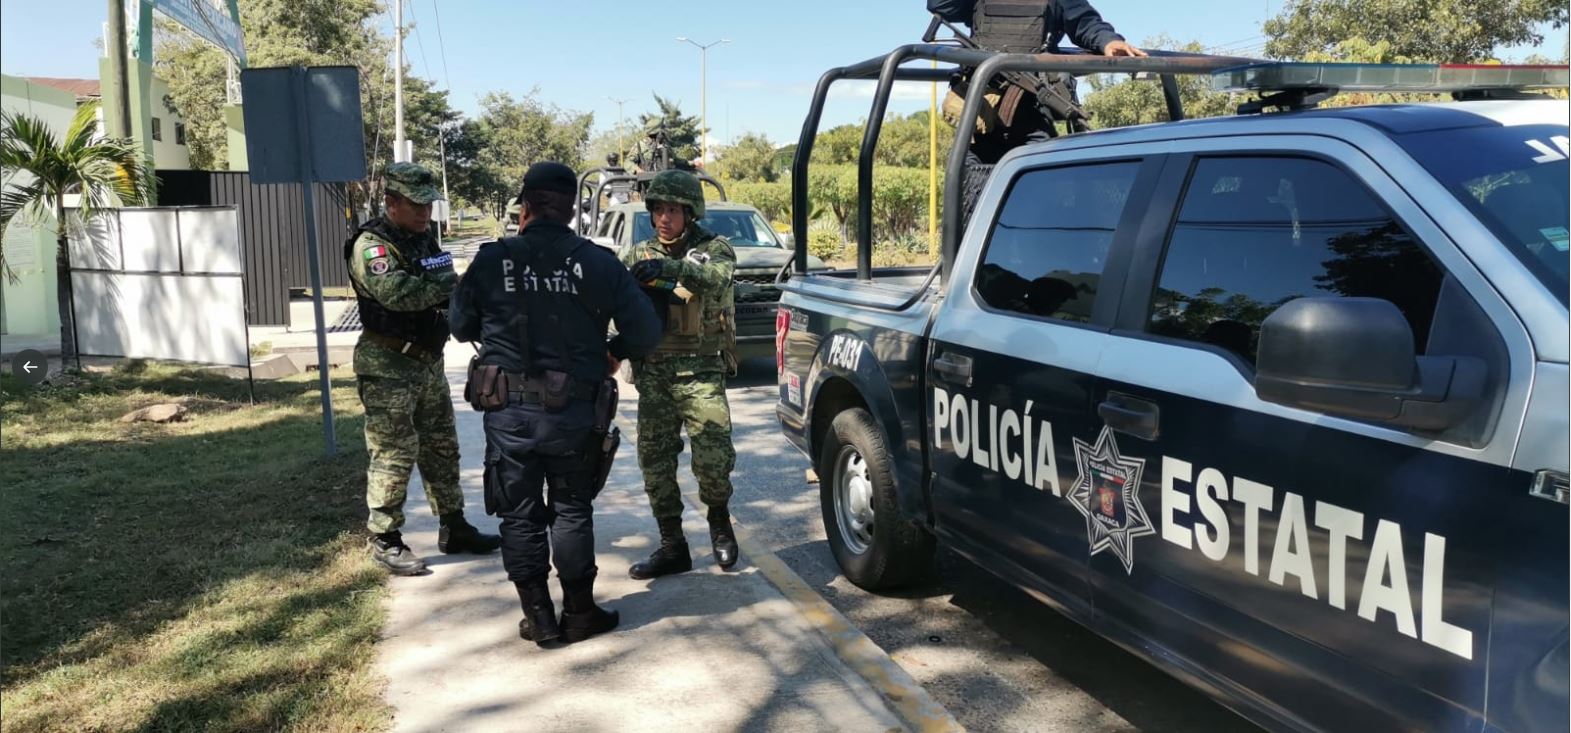 La Policía del estado de Oaxaca, México, localizó a una adolescente guatemalteca que había sido reportada como desaparecida en Coatepeque, Quetzaltenango. (Foto Prensa Libre: Tomada de @SSP_GobOax)